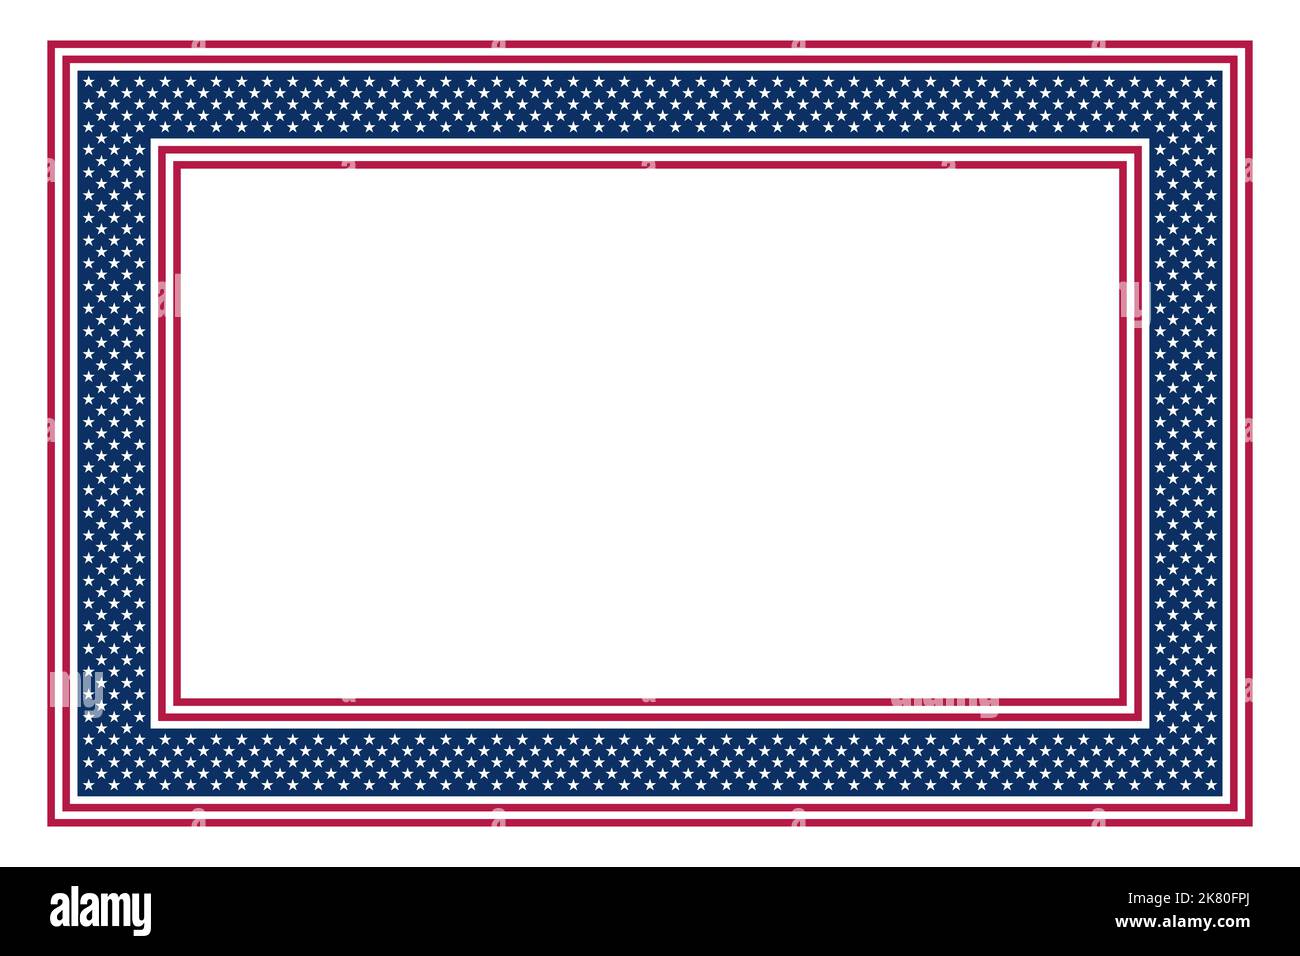 Motiv der Nationalflagge der Vereinigten Staaten, rechteckiger Rahmen. Rechteckige Rahmen von Sternen und Streifen Muster, basierend auf der amerikanischen Flagge. Stockfoto